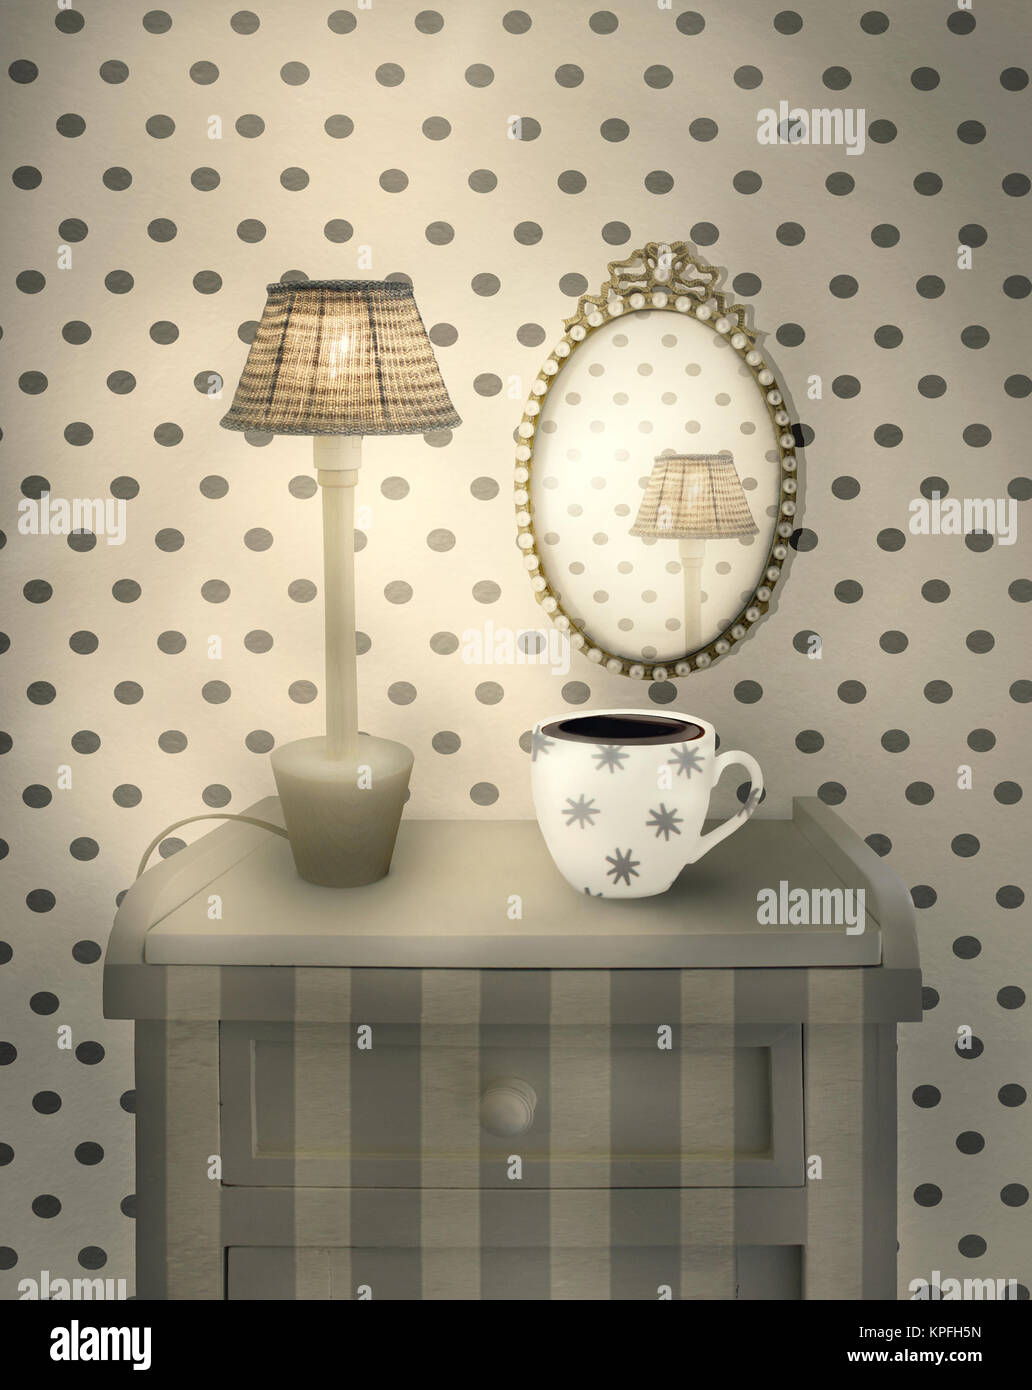 Bellissimi interni dettaglio di un comodino con lampada accesa una tazza e un specchio ovale in un ambiente accogliente Foto Stock